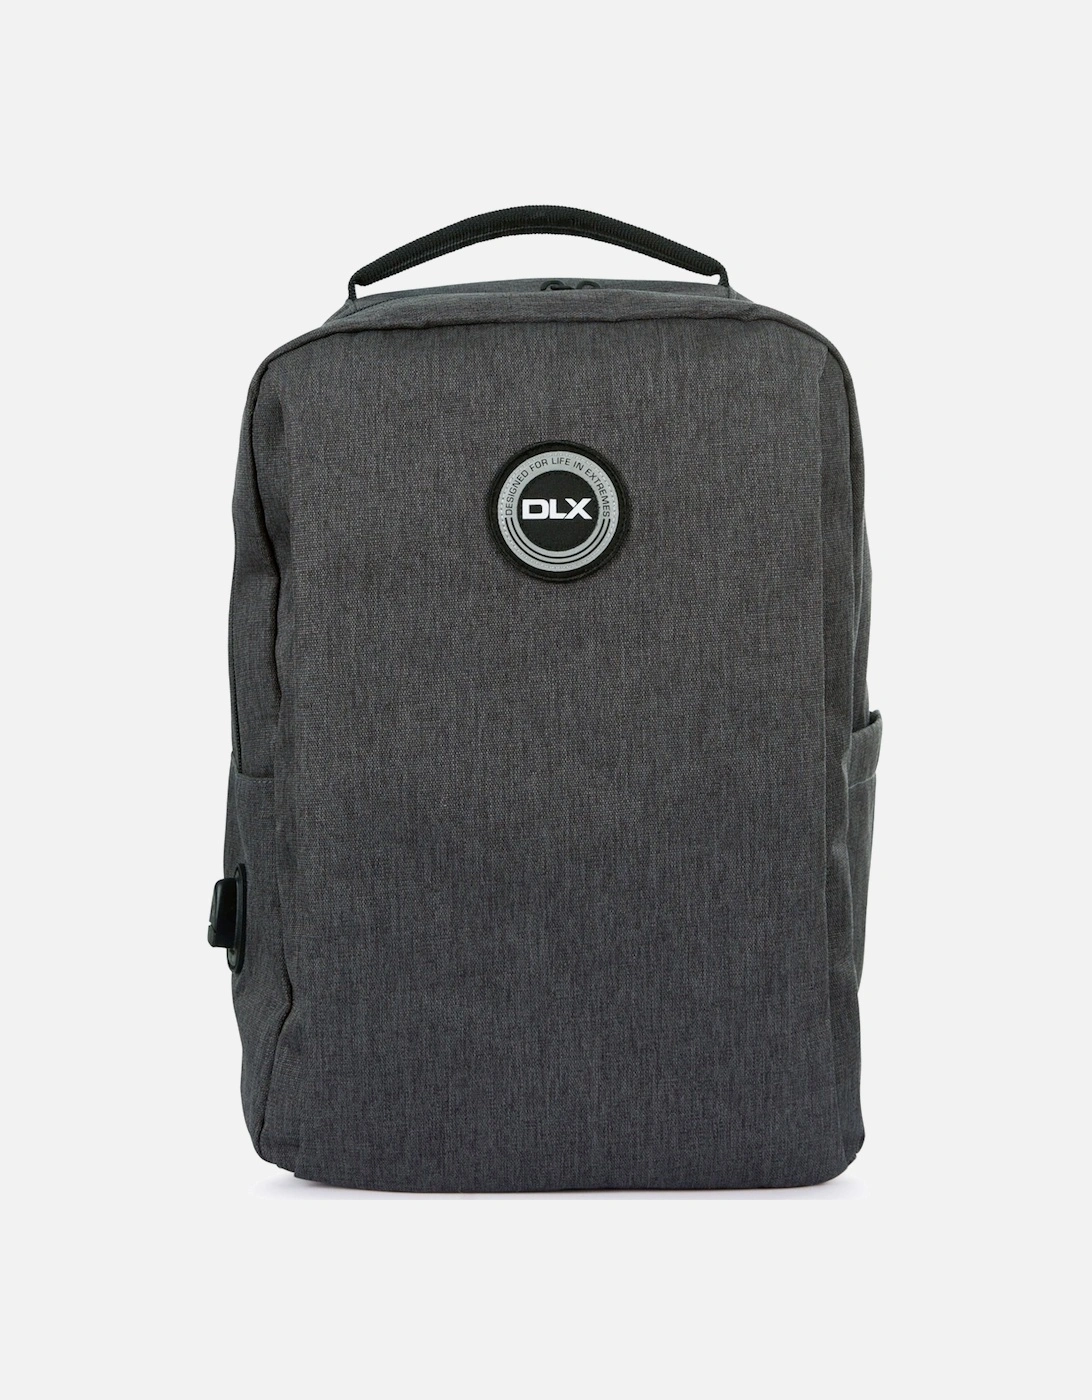 Sarclet DLX Backpack, 6 of 5